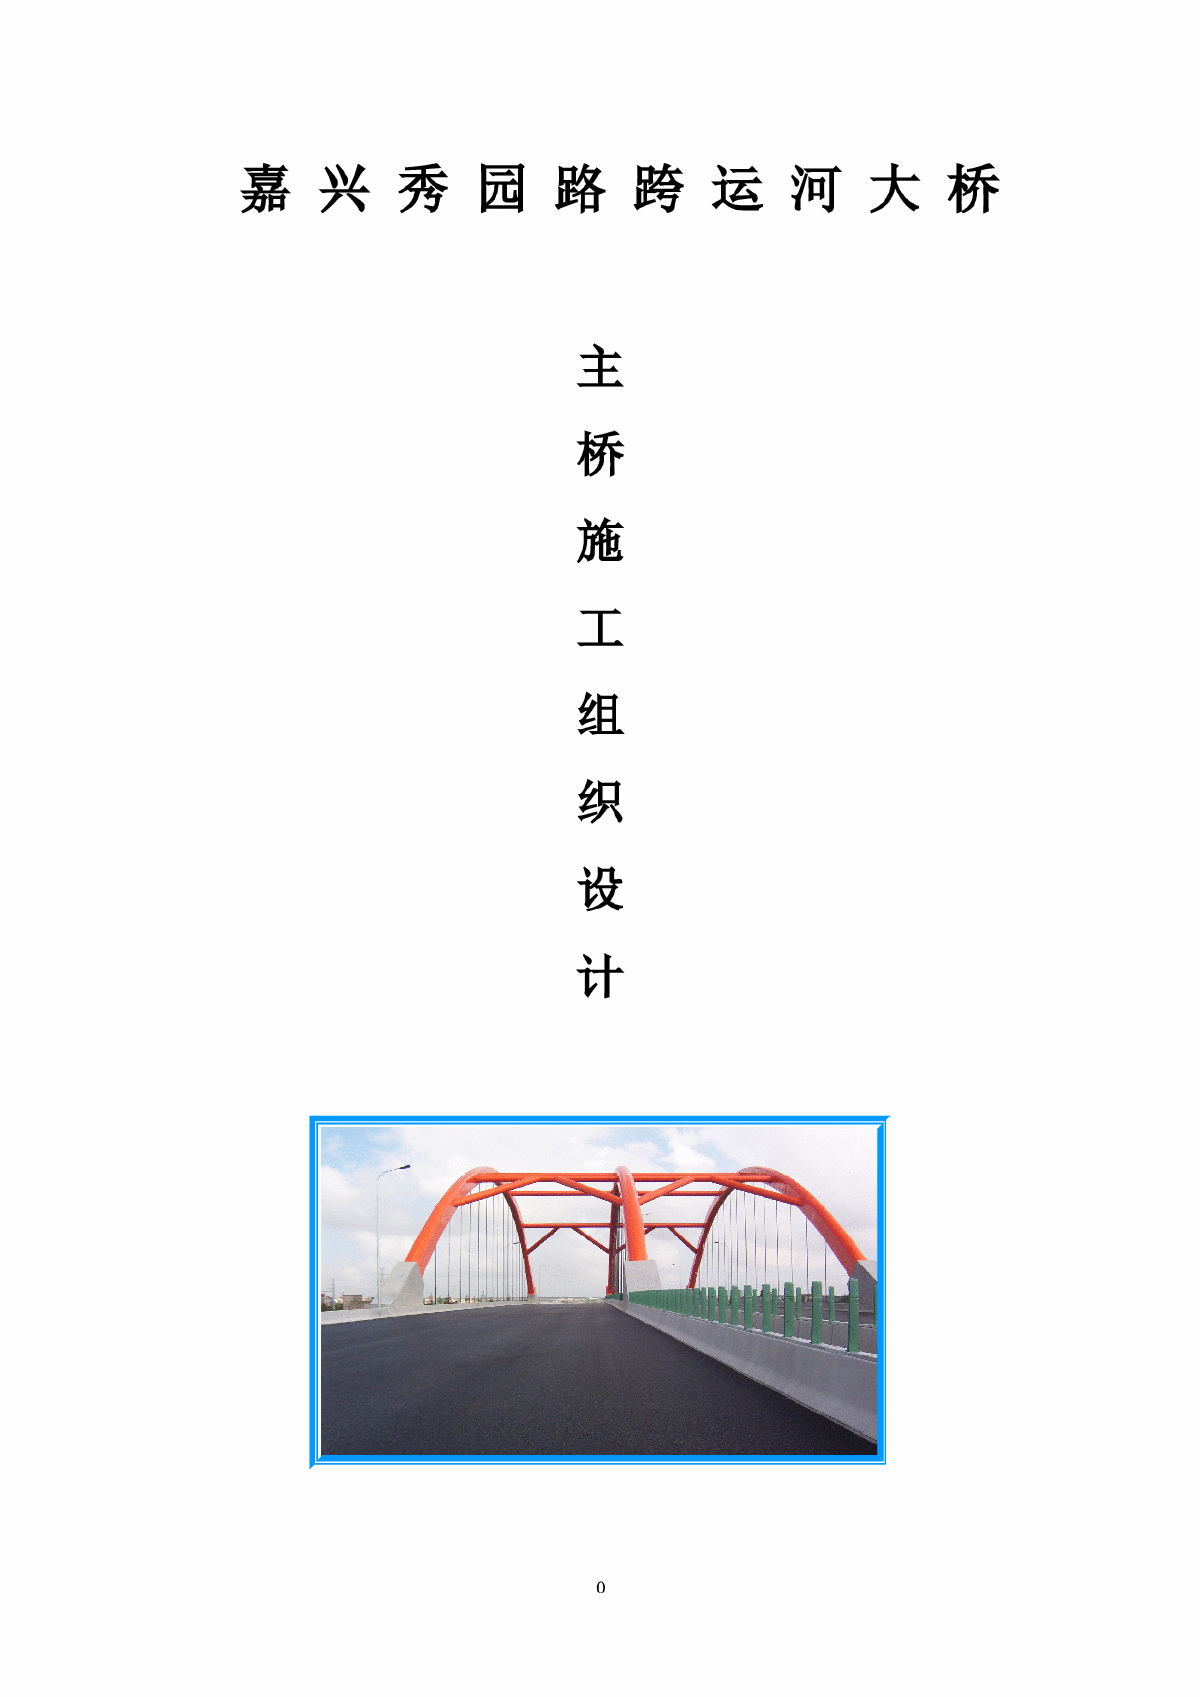 秀园路跨杭申线大桥及附属工程施工组织设计方案-图一